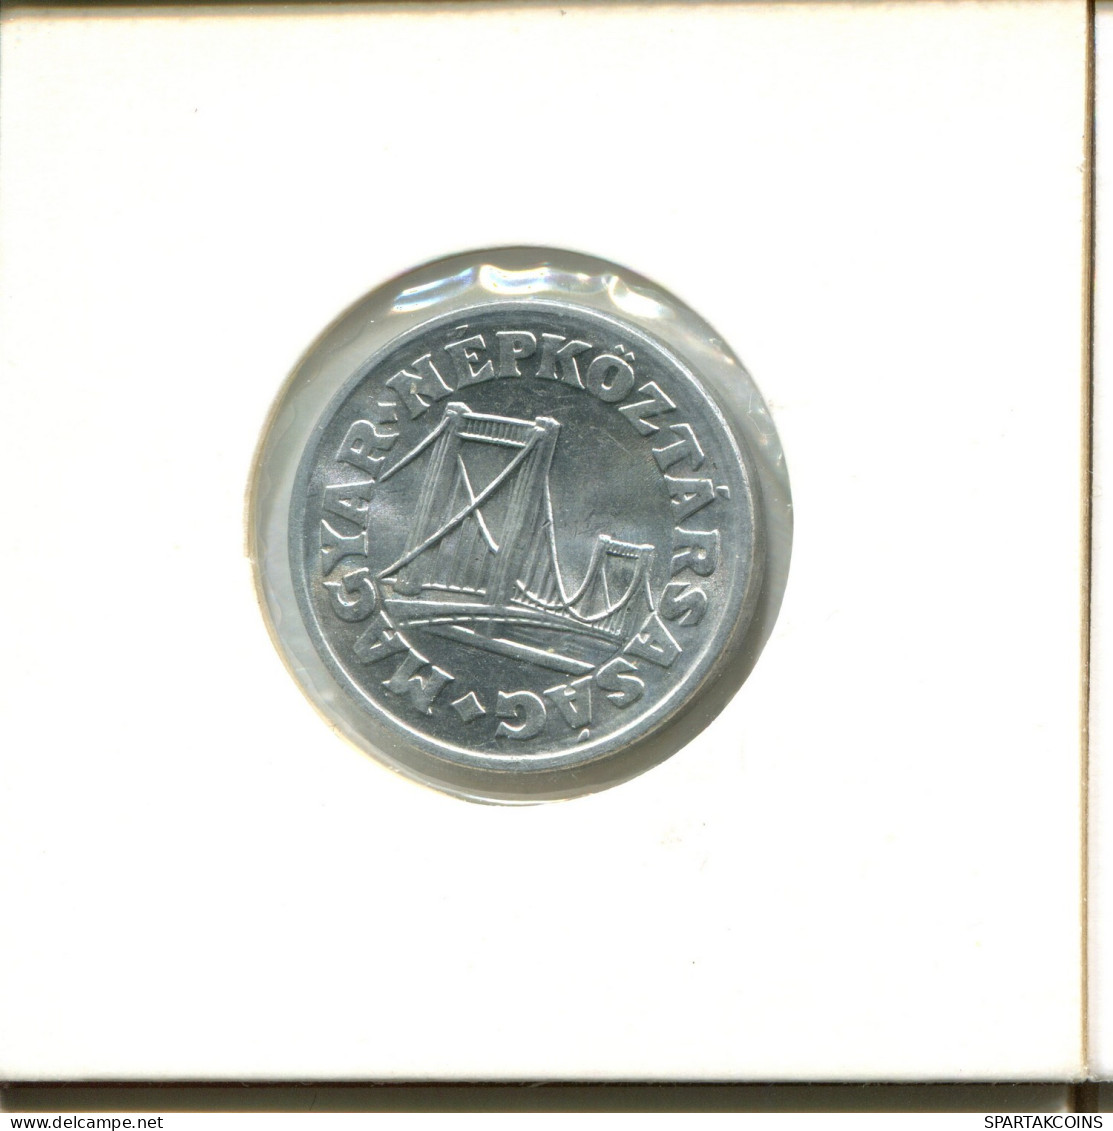 50 FILLER 1982 HUNGARY Coin #AY230.2.U.A - Hongrie